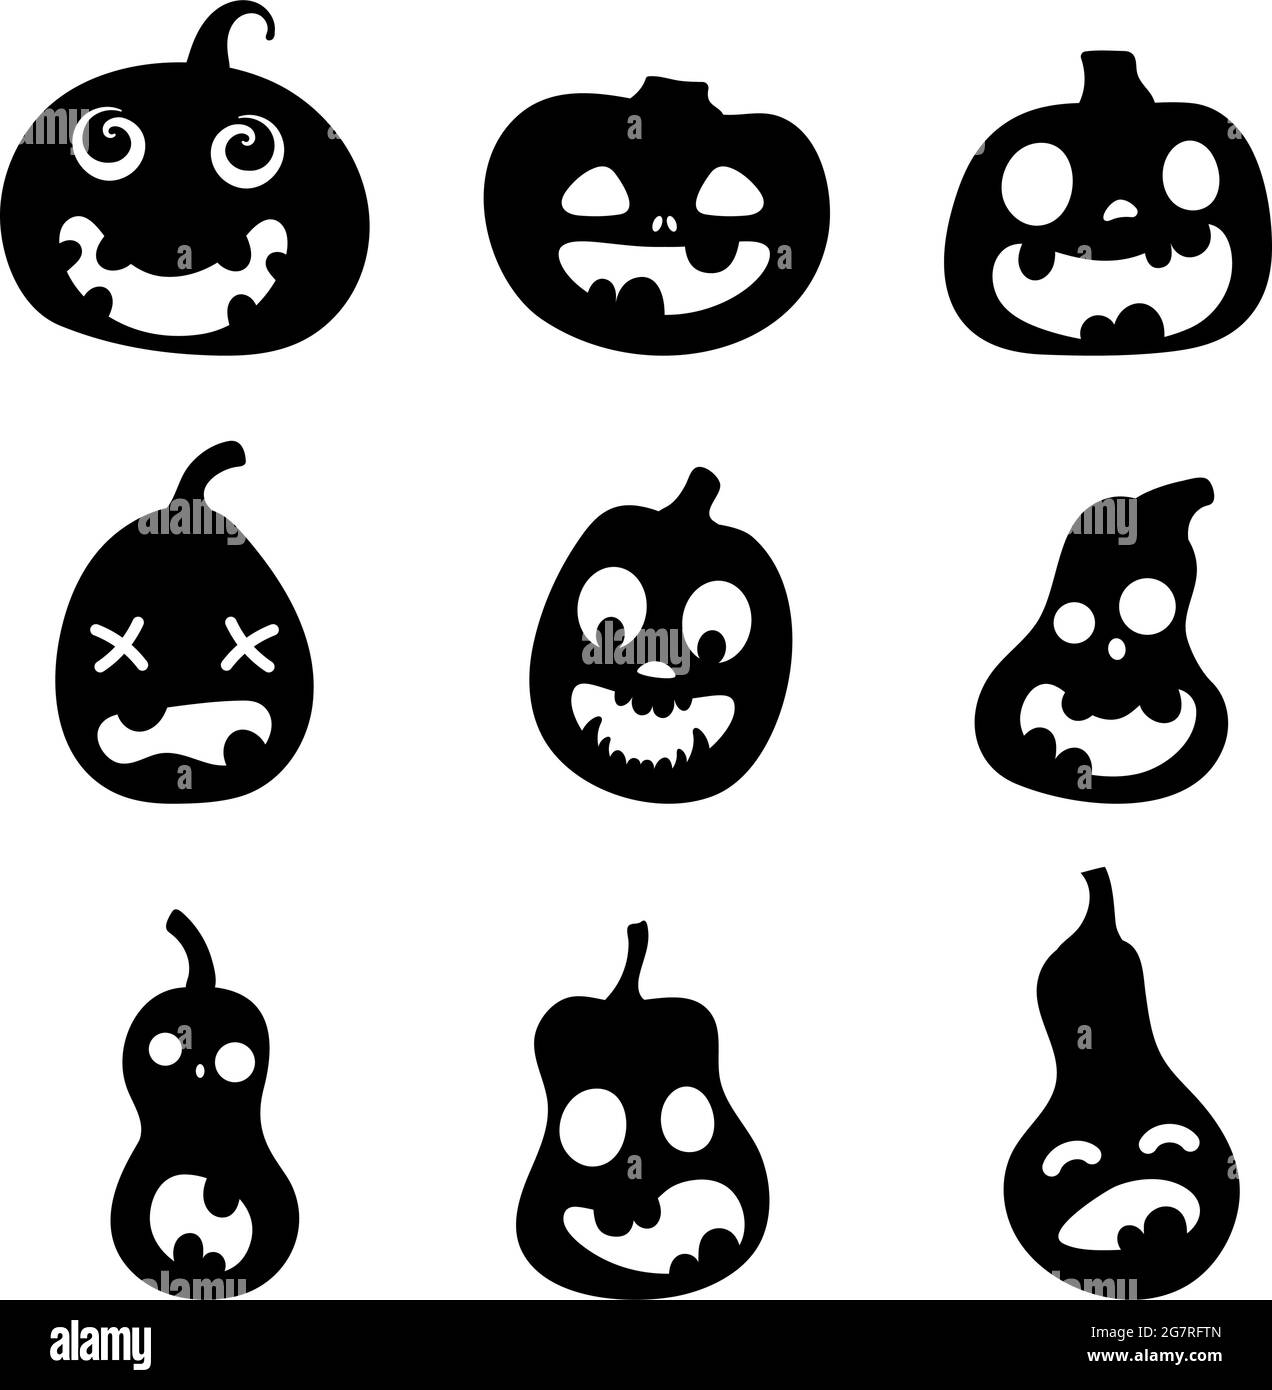 Ensemble de silhouettes de citrouilles effrayantes pour Halloween. Illustration des expressions du visage de Jack-o-lanterne. Collection simple d'images effrayantes d'horreur de citrouilles. Illustration de Vecteur